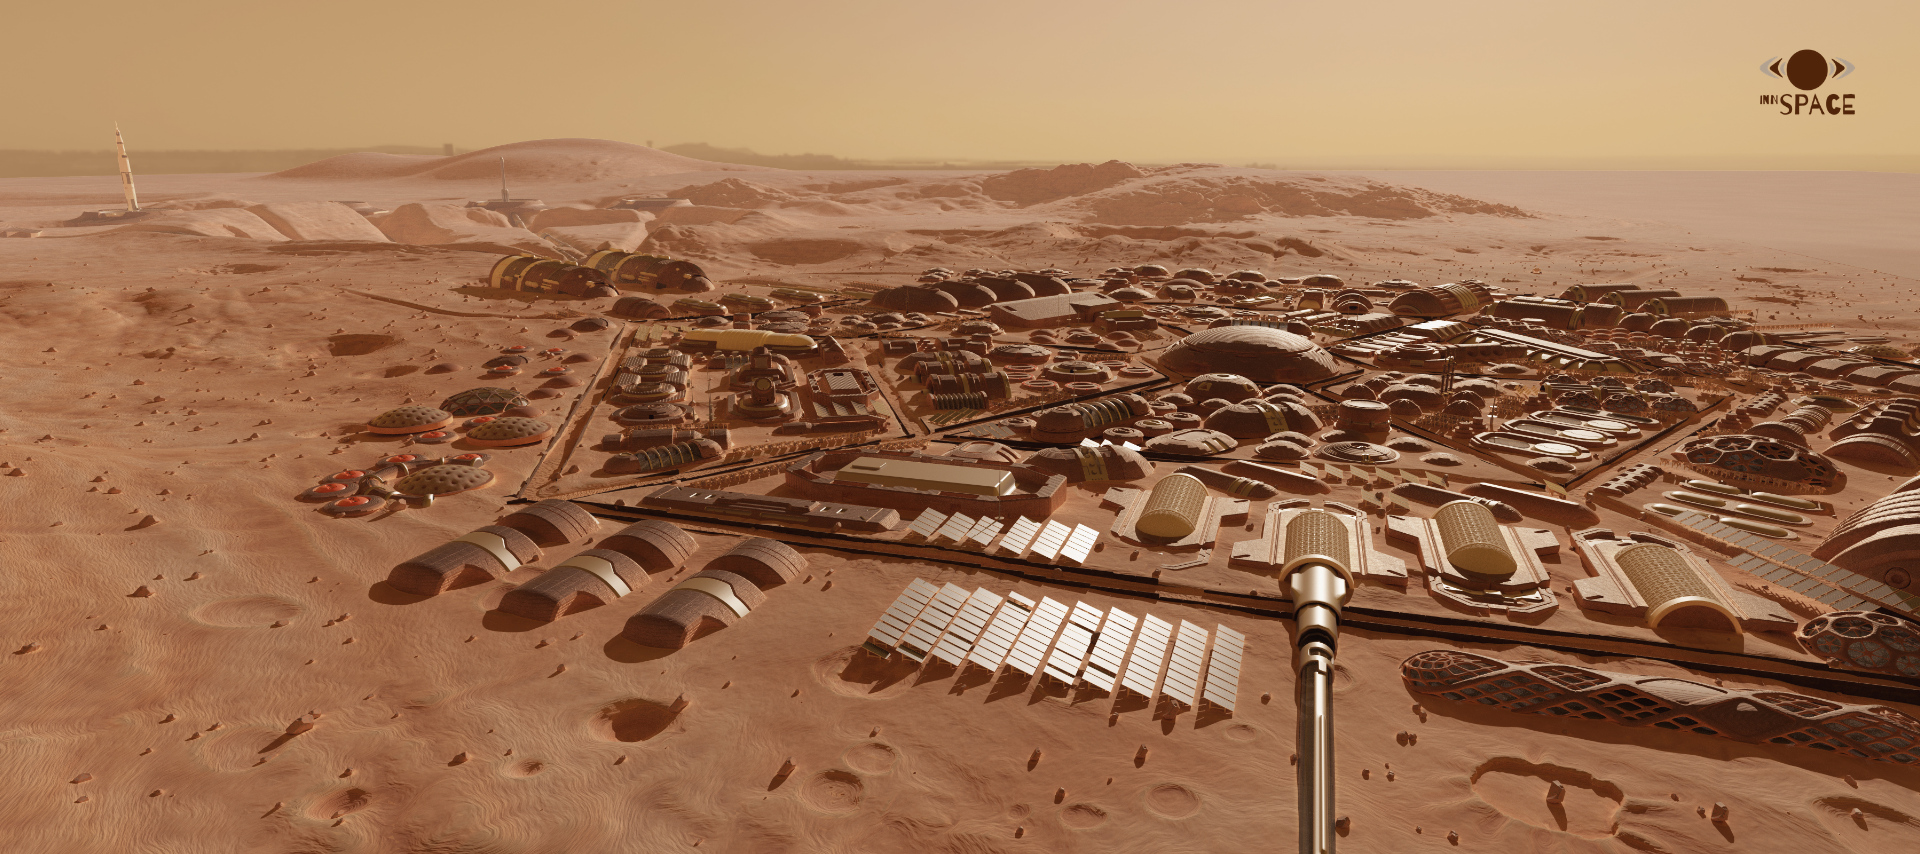 Mars Colony Living Quarters